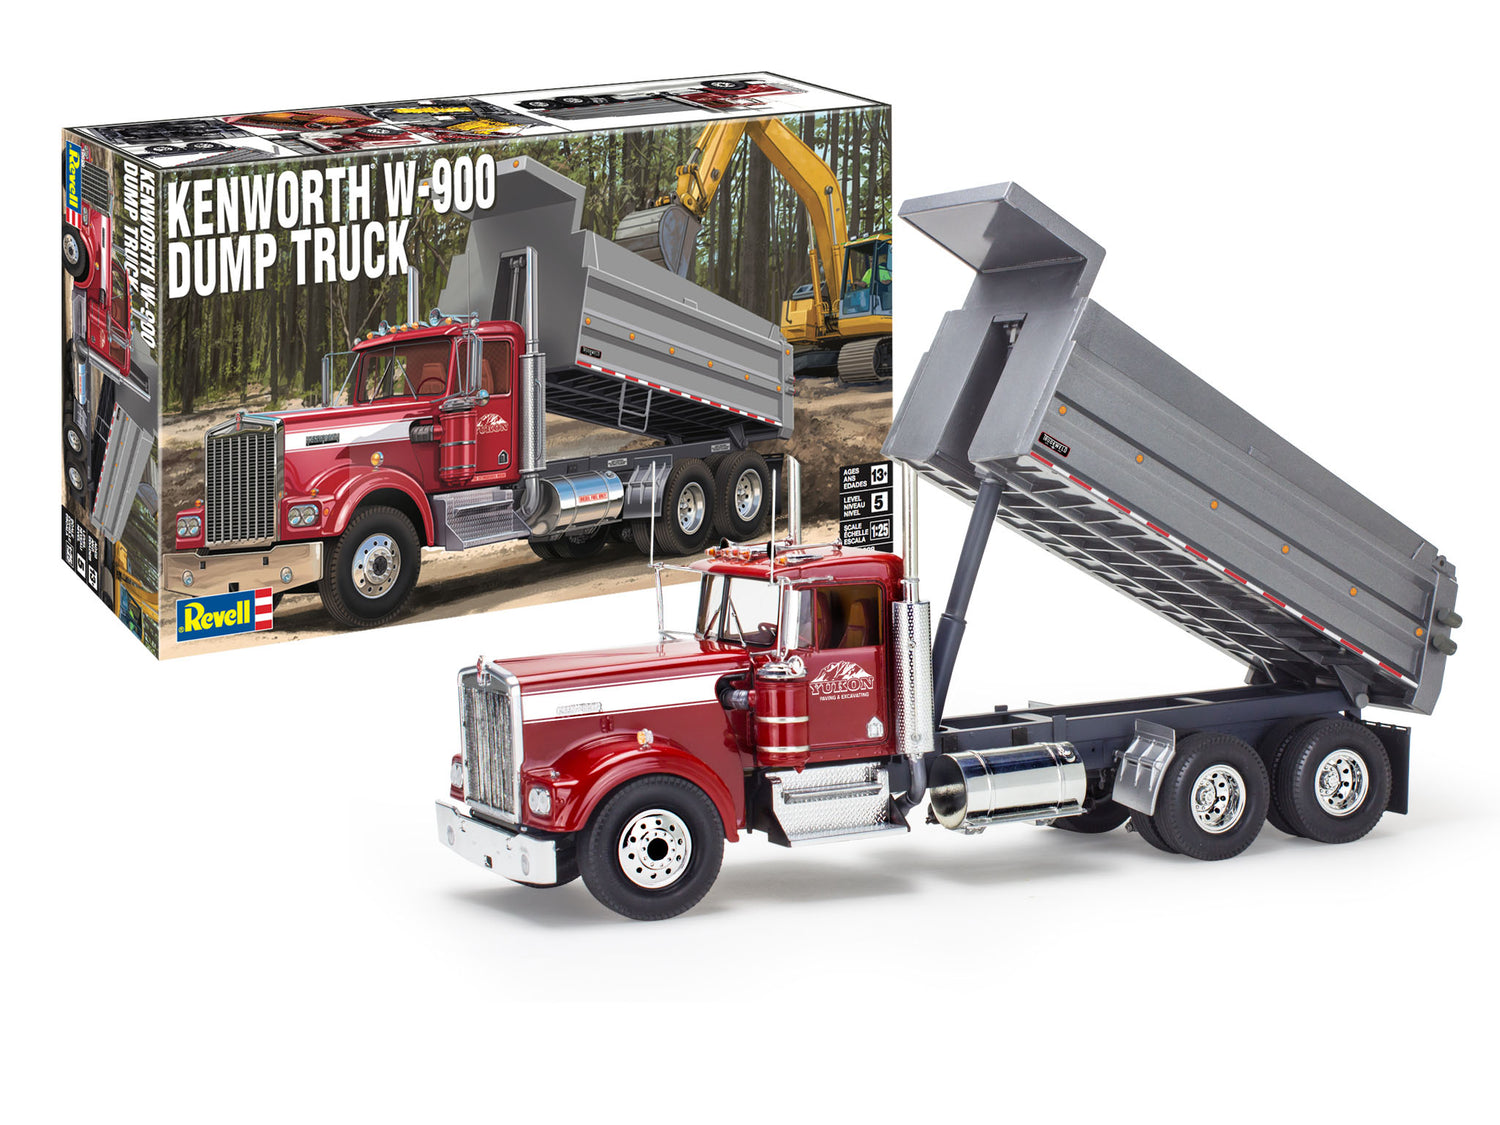 Revell Kenworth K-900 Dump Truck 1:25 Scale Model Kit